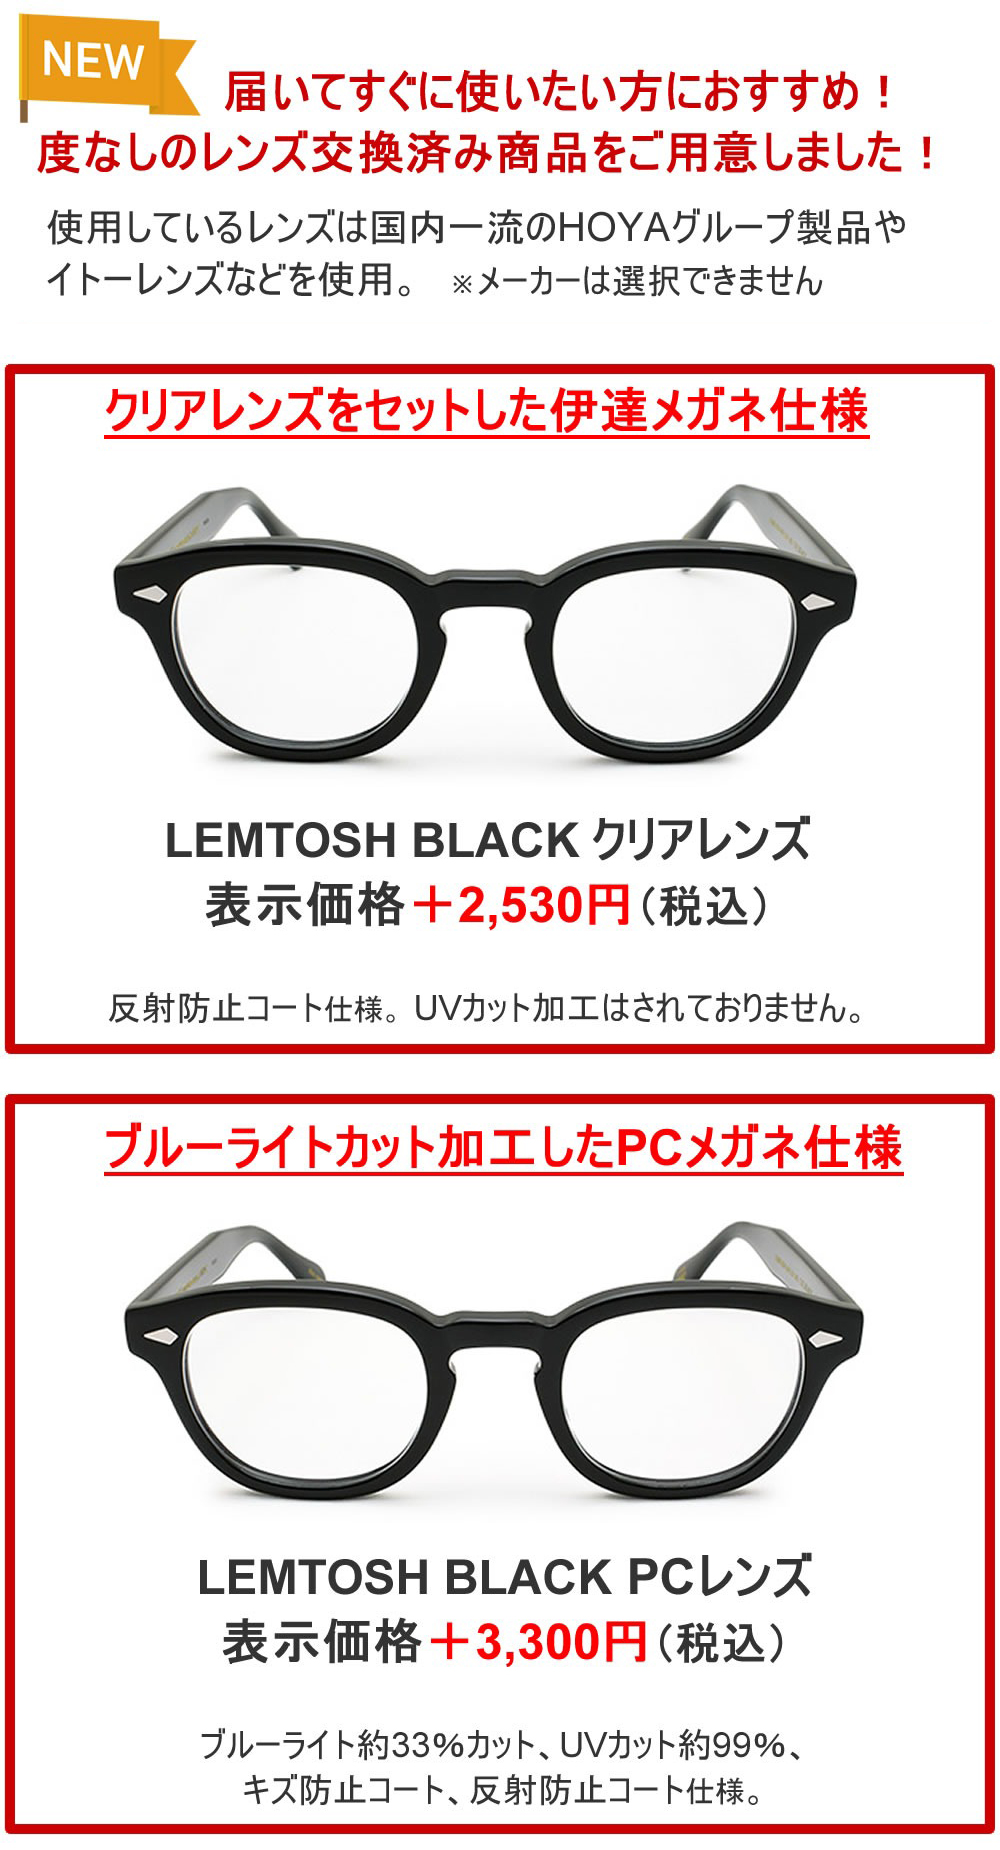 MOSCOT モスコット LEMTOSH MP OR-LEMA-O49240200-01 BLACK サイズ49 ノーズパッド 眼鏡 フレーム のみ メンズ レディース